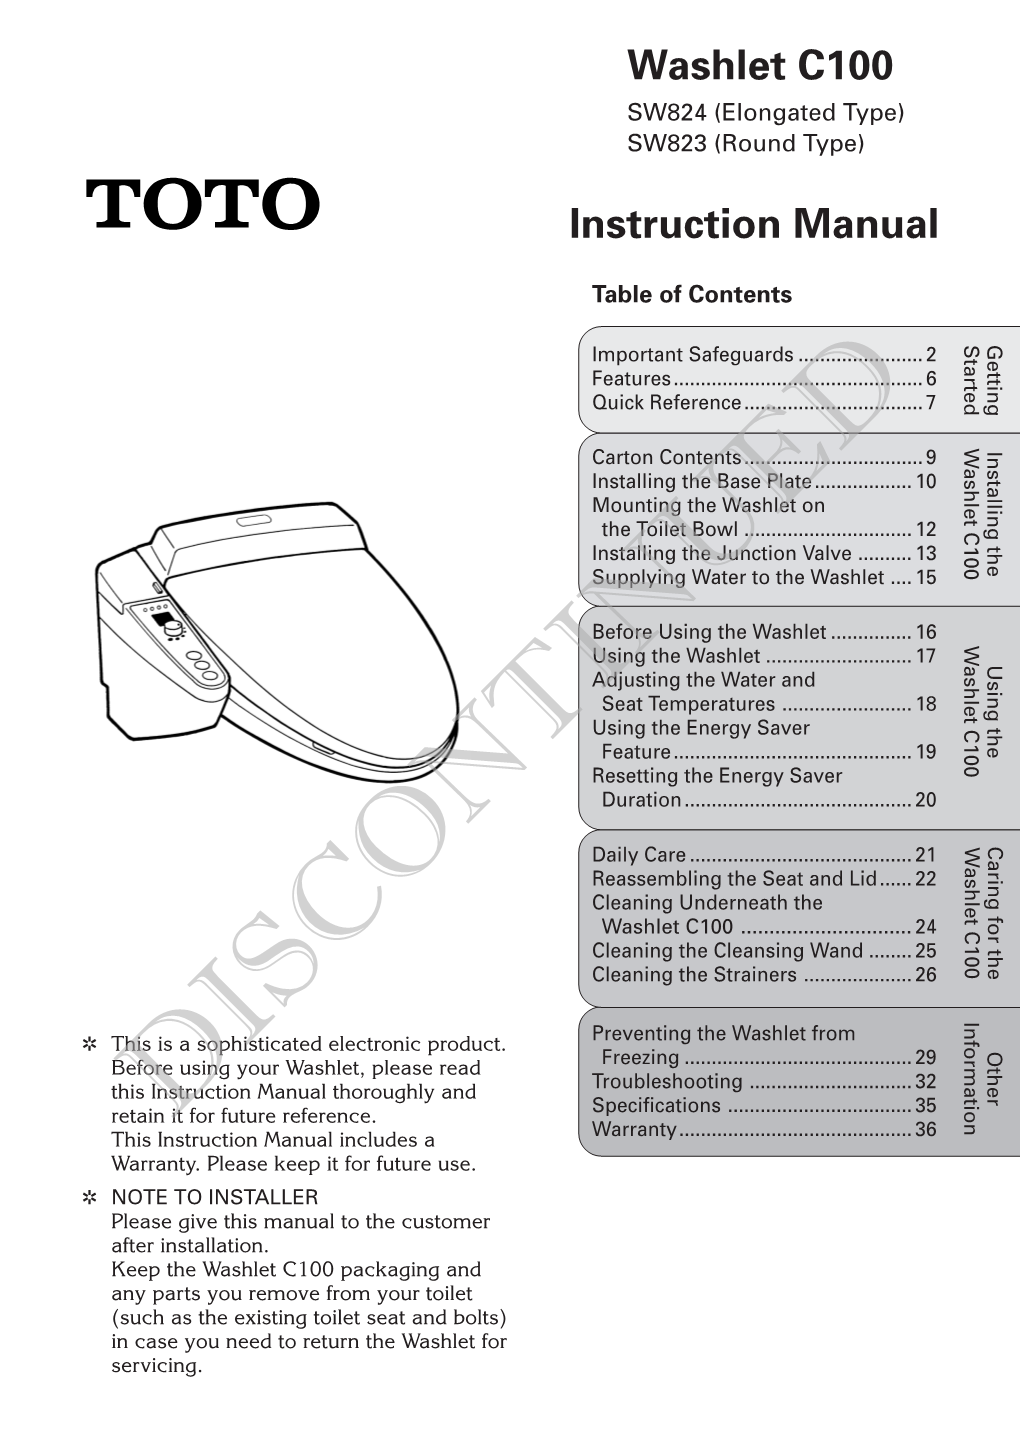 Washlet C100 Instruction Manual